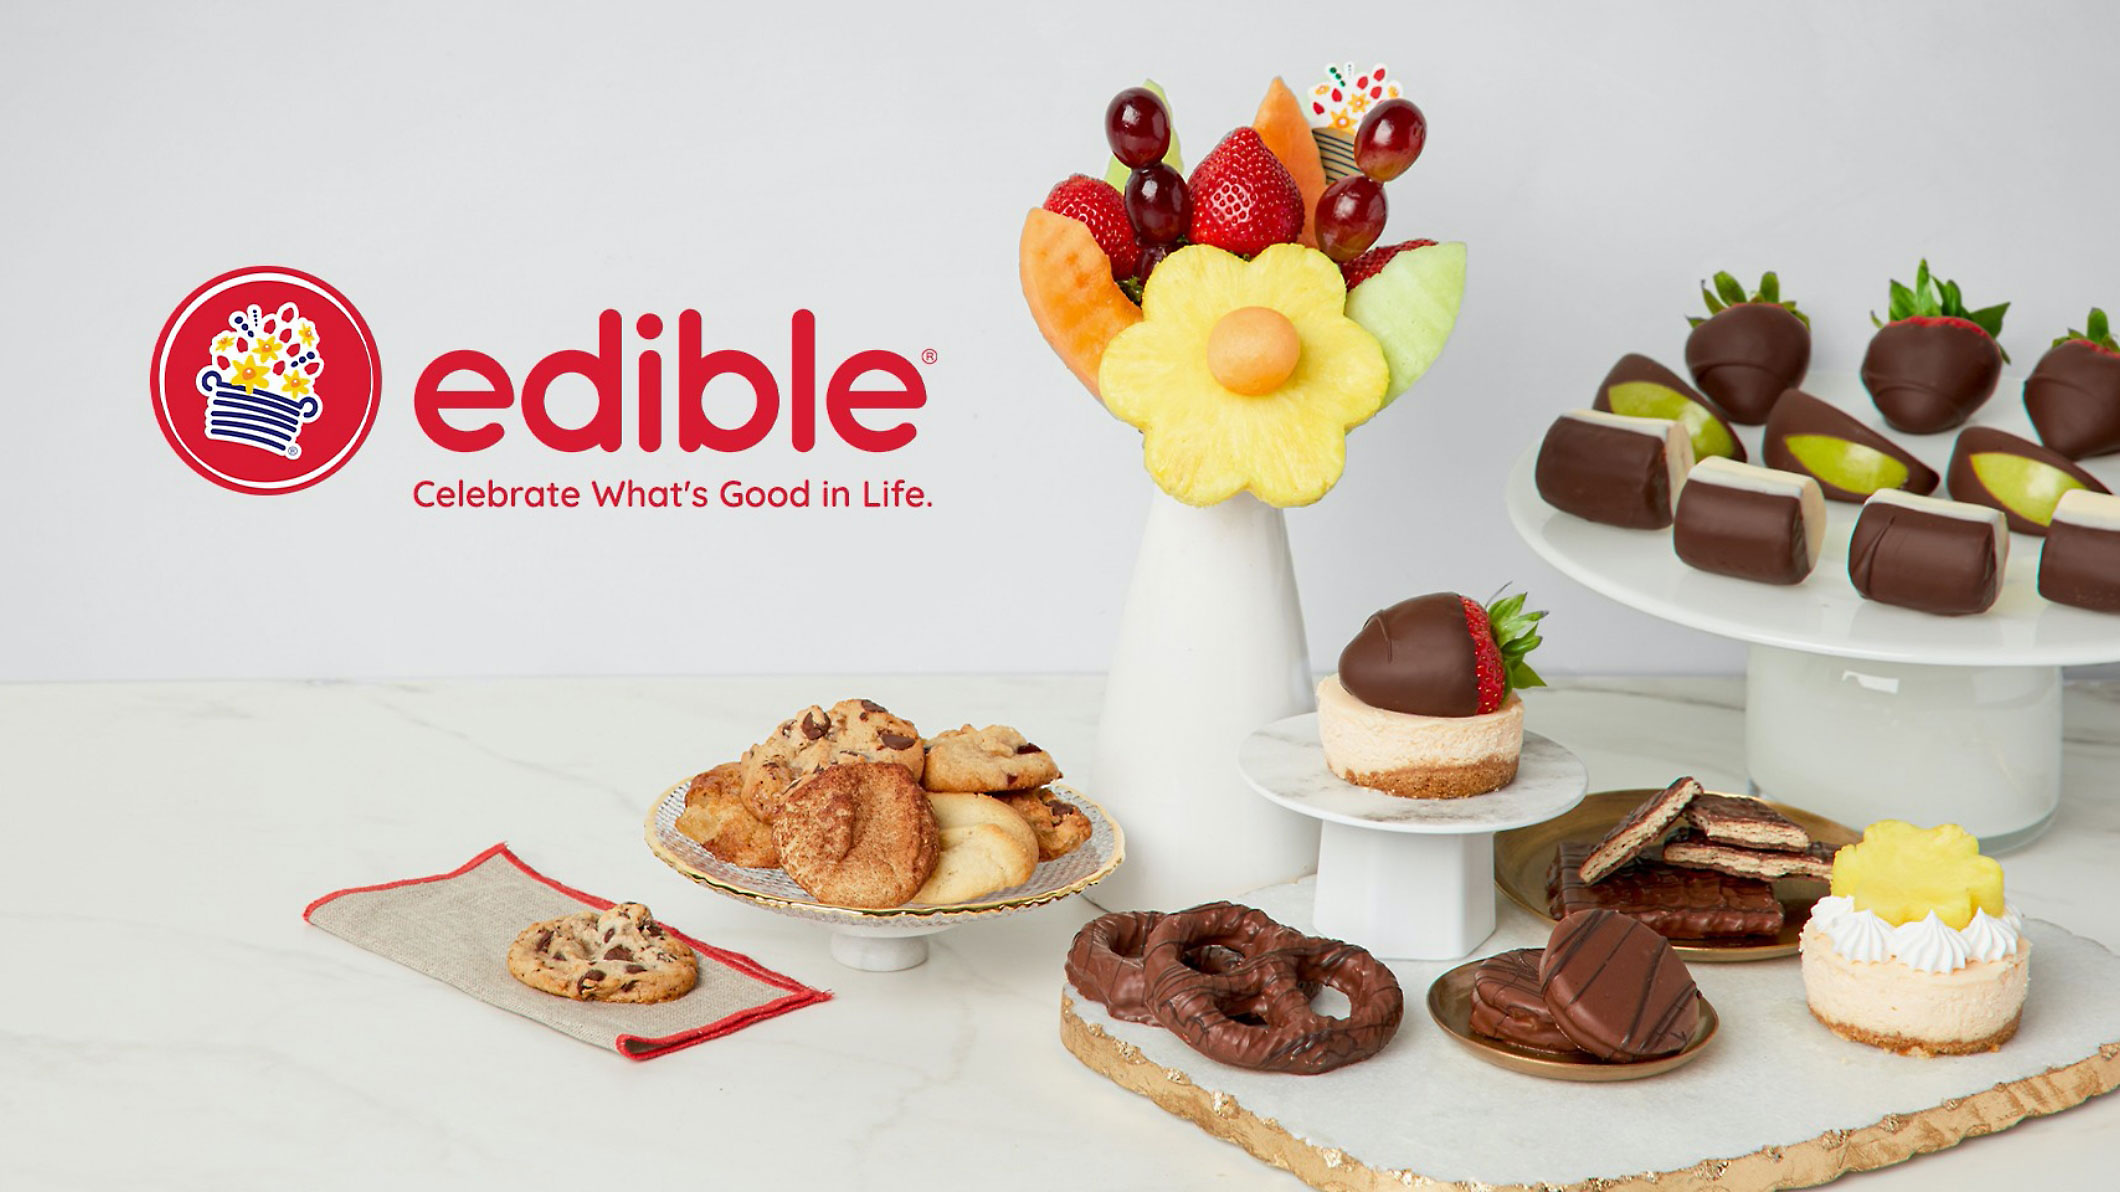 Tableau plein de desserts et de cookies avec le mot Edible qui s’y trouve.